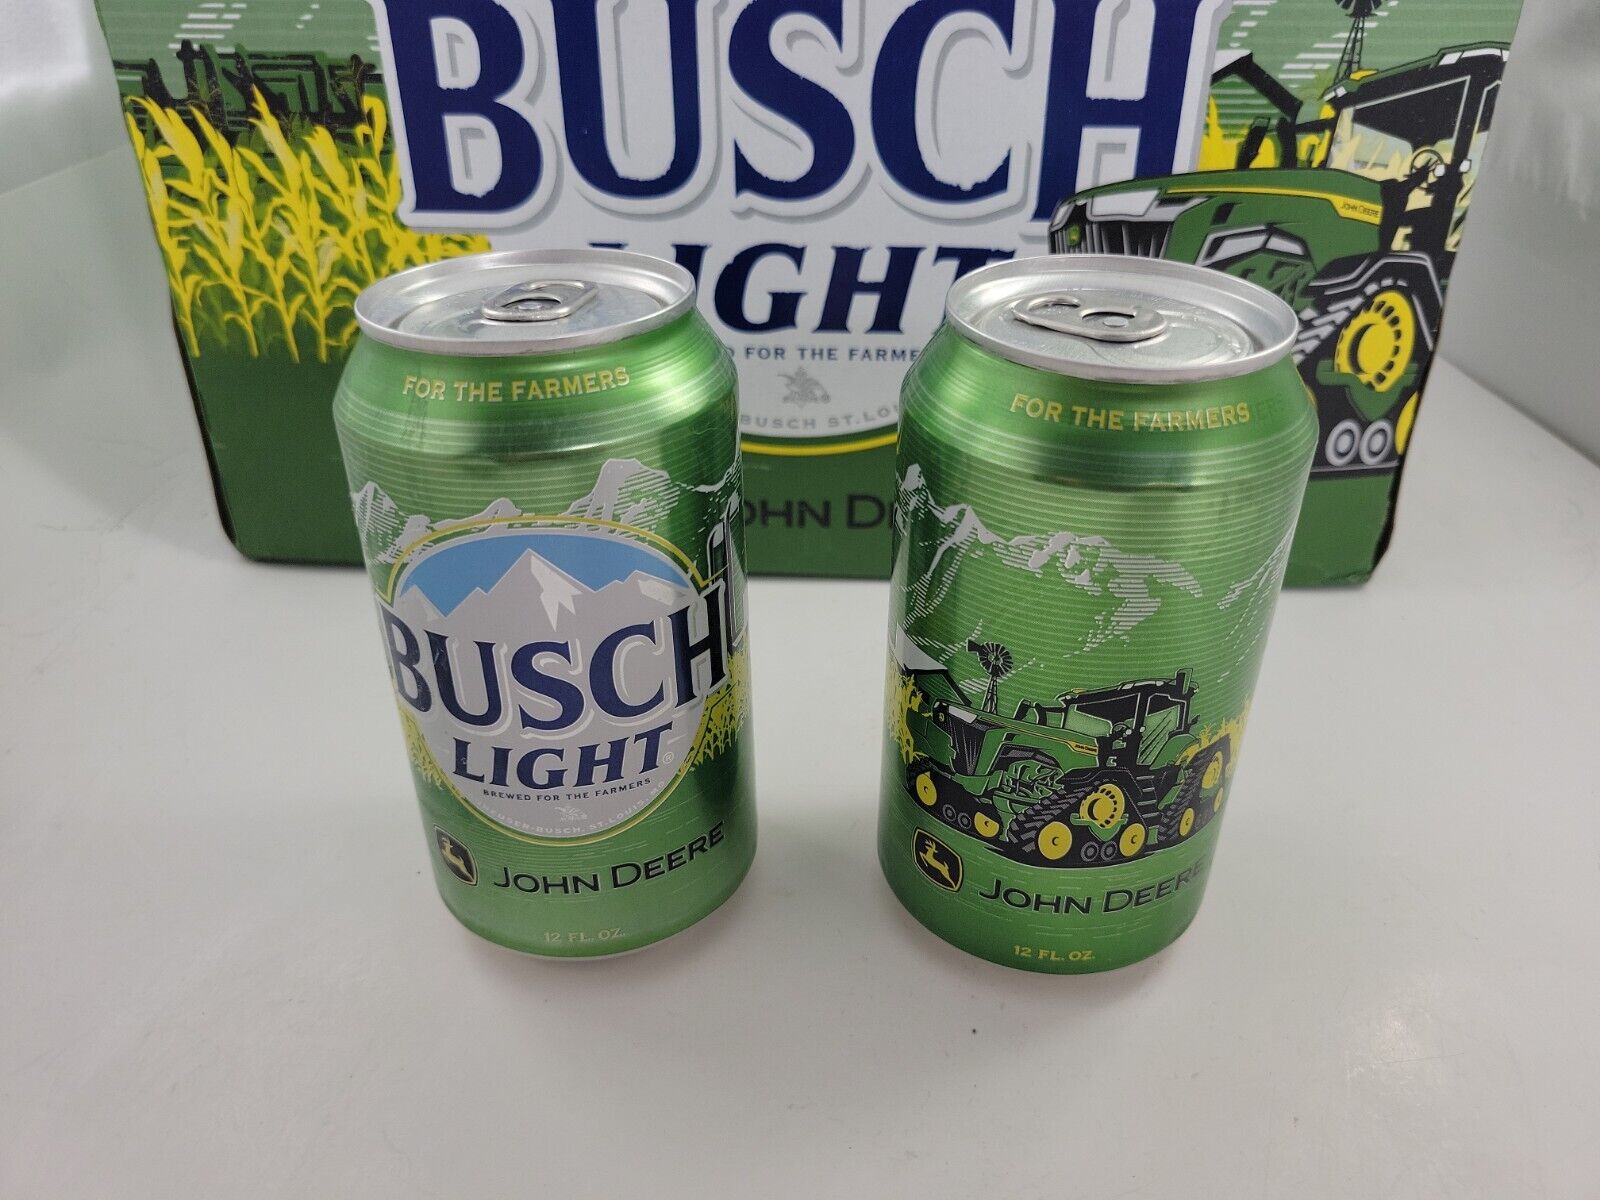 Busch Light John Deere For The Farmers 12oz cans (2)